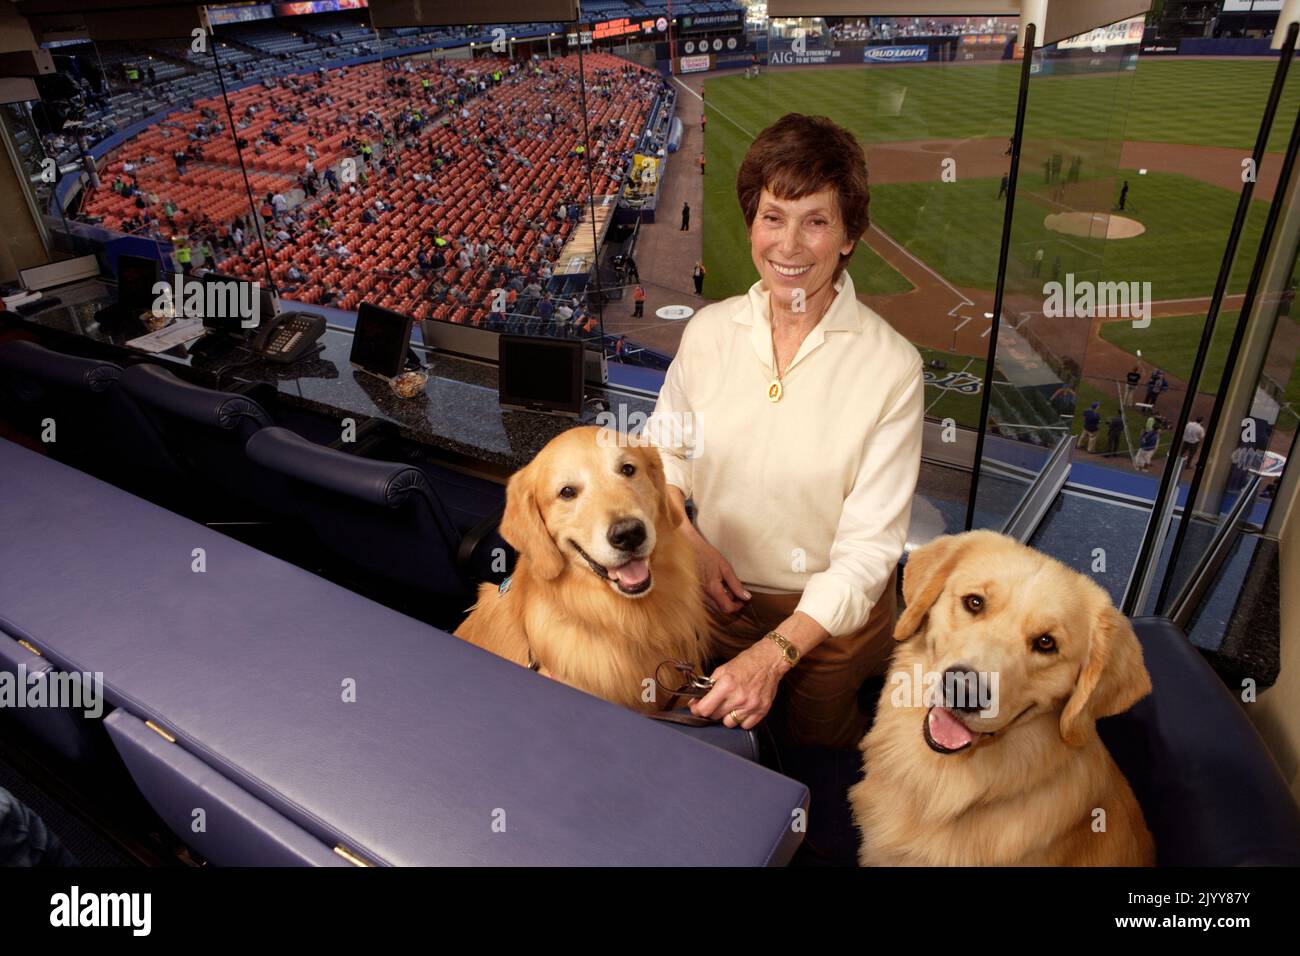 Judy Kessler, moglie del proprietario dei New York Mets Fred Wilpon con i suoi due Golden Retrievers nel box proprietario dello Shea Stadium nel 2006. Foto Stock